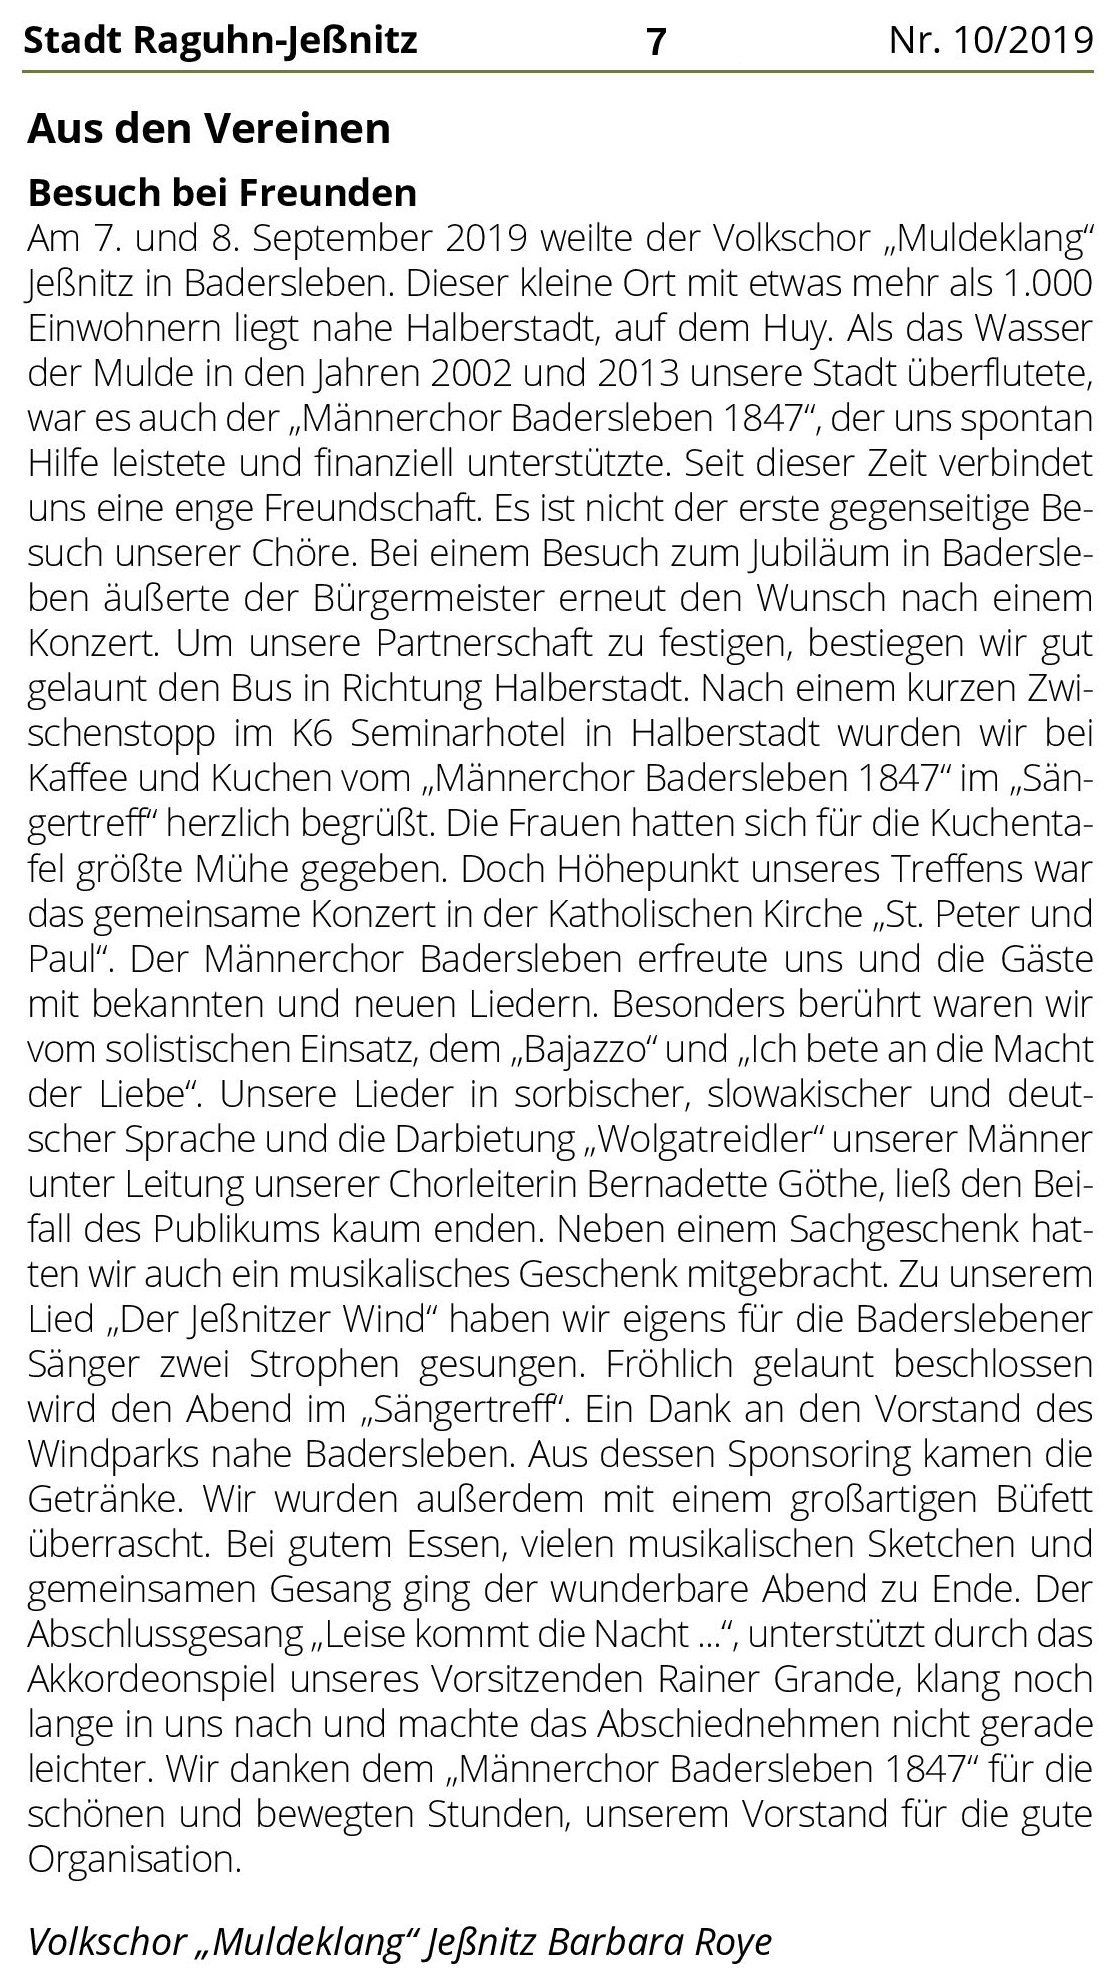 Leserbrief zur Chorfahrt nach Badersleben im Amtsblatt Raguhn-Jeßnitz